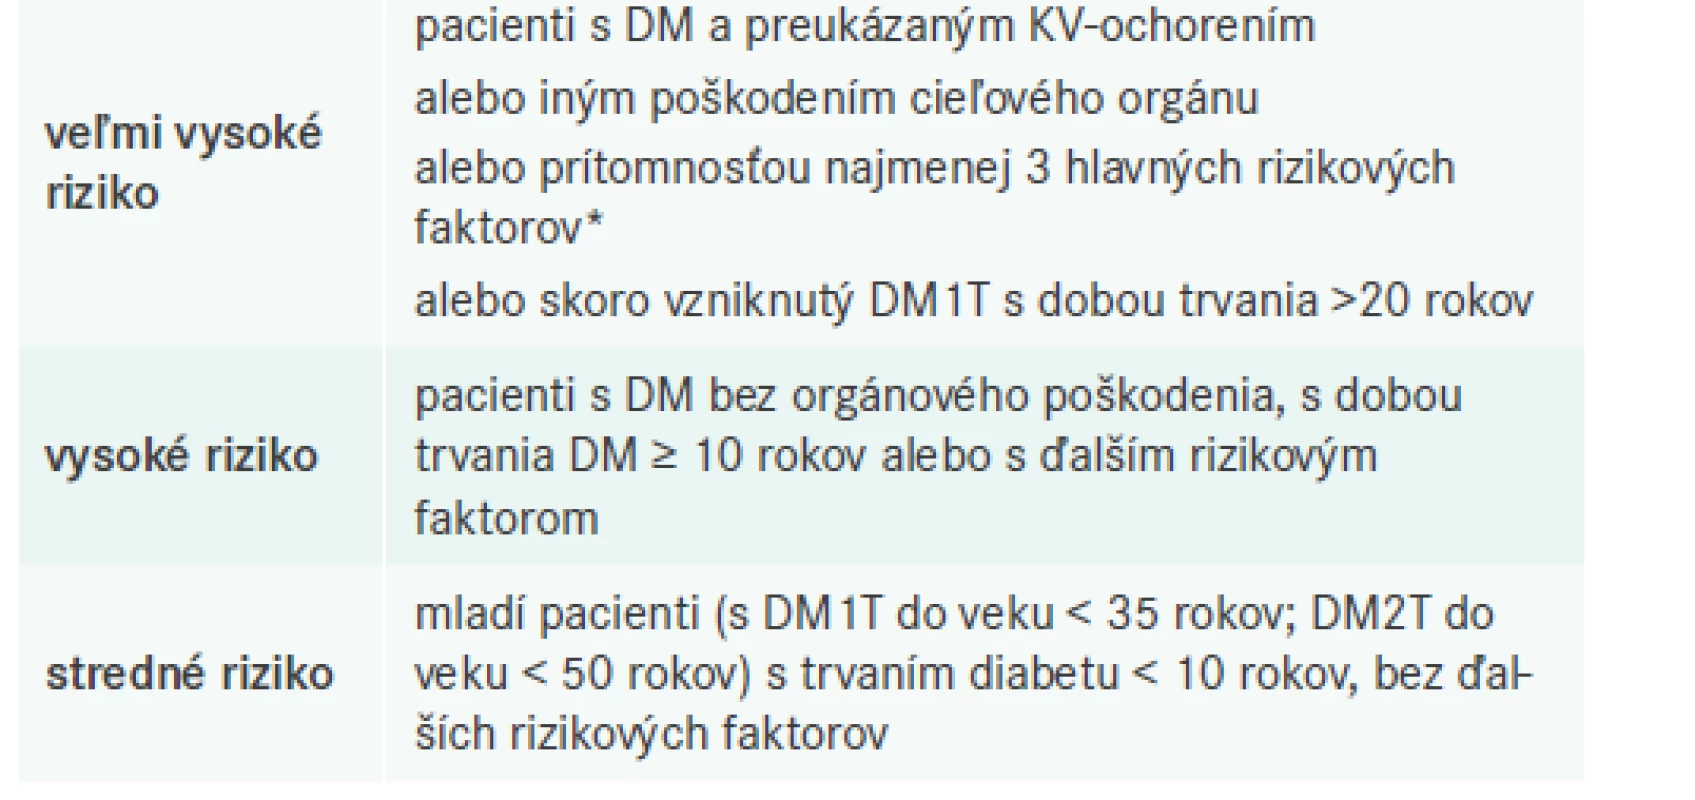 Kategórie rizika u pacientov s DM.
Upravené podľa [2]